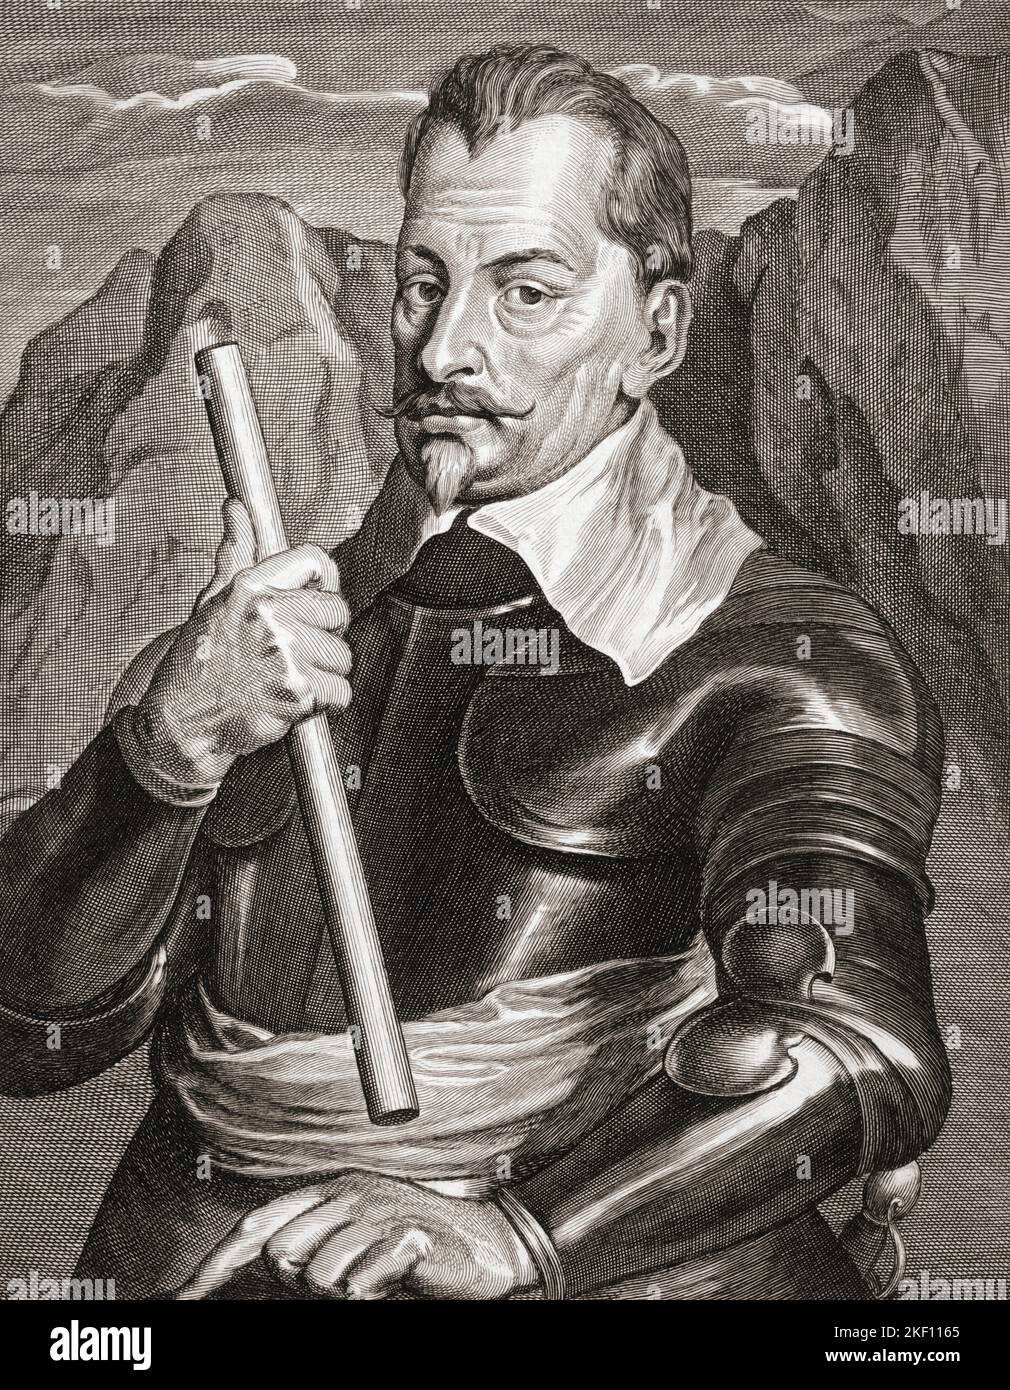 Albrecht Wenzel Eusebius von Wallenstein También von Waldstein, 1583 – 1634. Líder militar y político bohemio. De una impresión del siglo 17th basada en la pintura de Sir Anthony van Dyck. Foto de stock